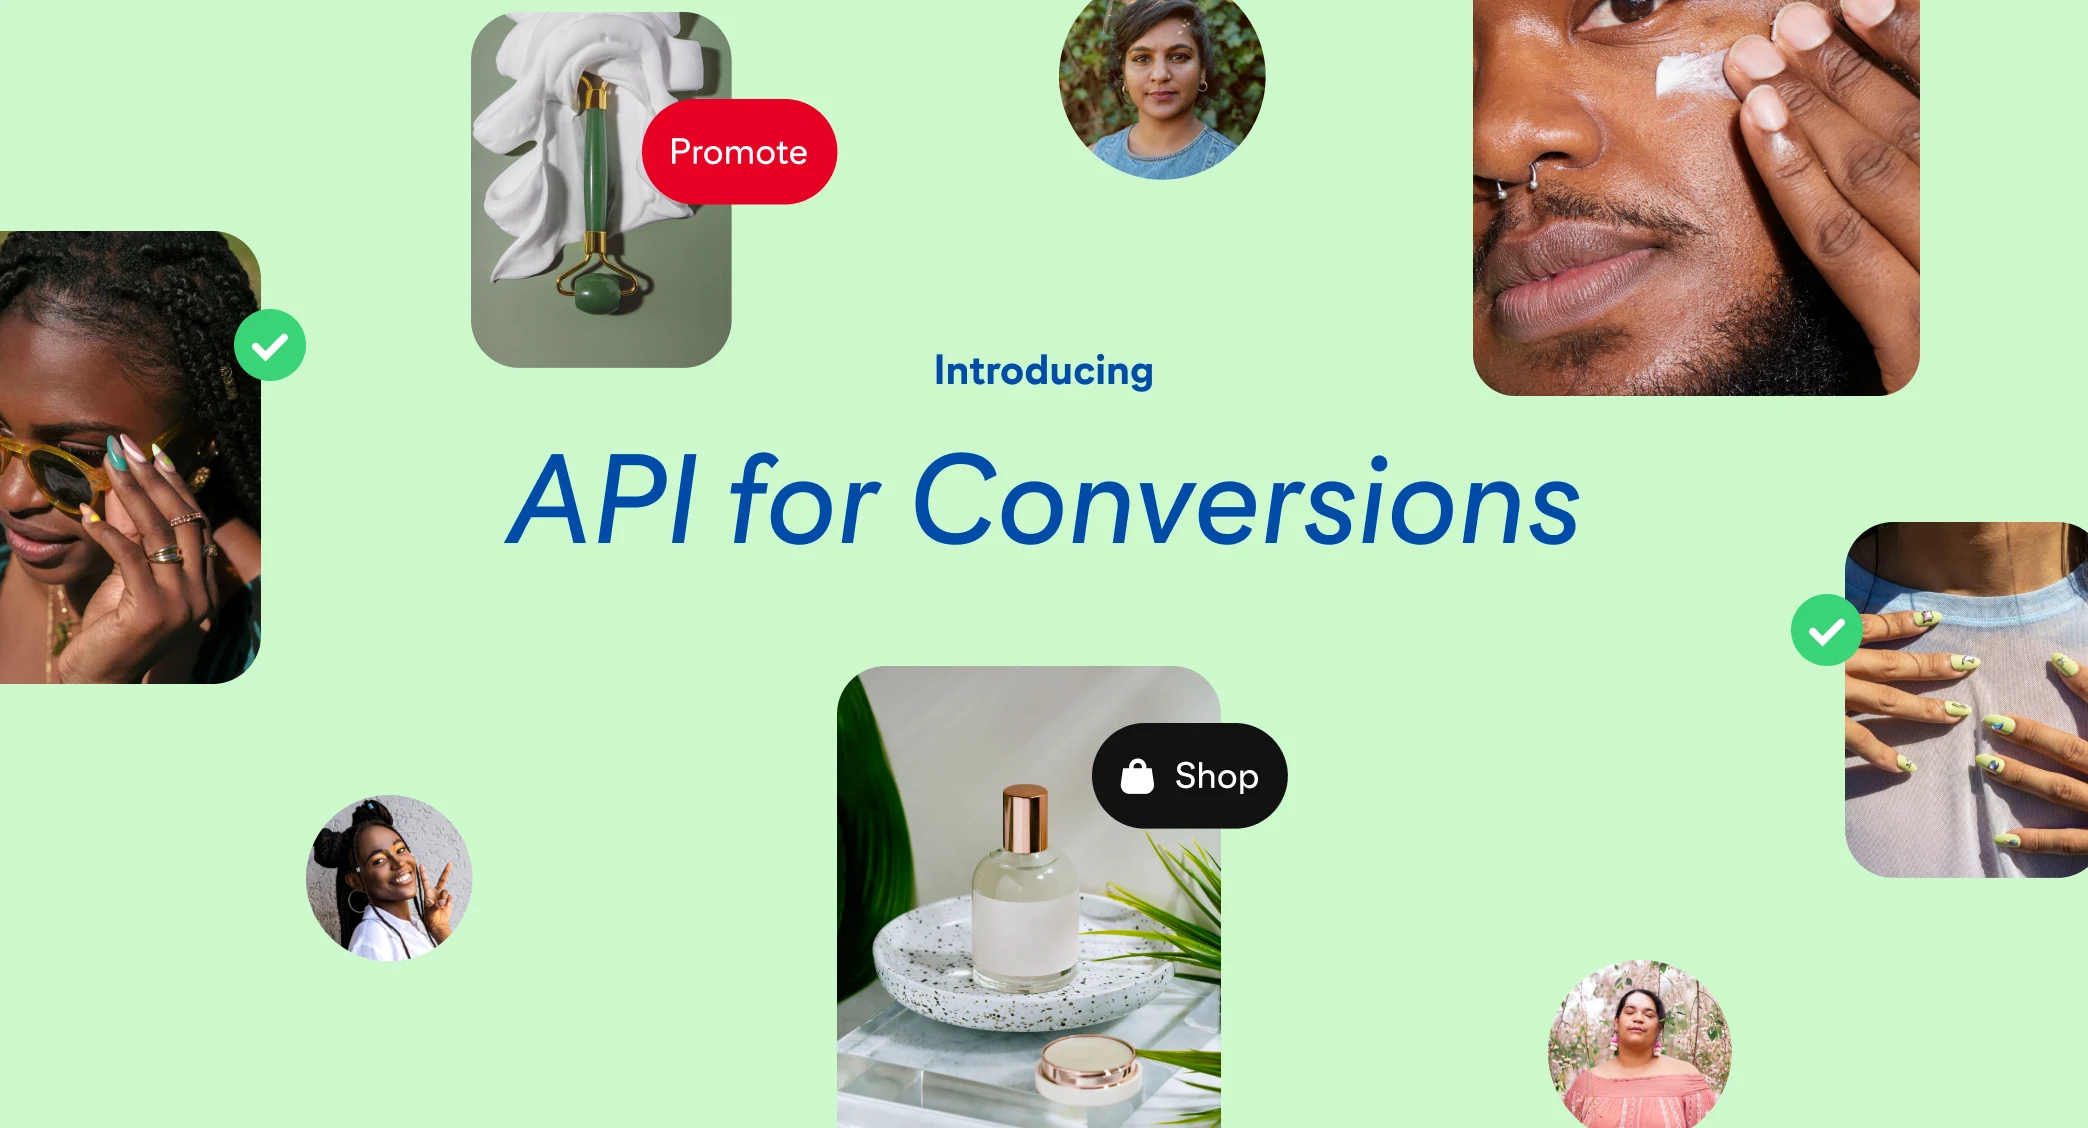  Alcuni Pin di Pinterest che rappresentano unghie colorate, bellezza e cura della pelle sono posizionati su uno sfondo verde, con le parole "Introducing API for Conversions" al centro